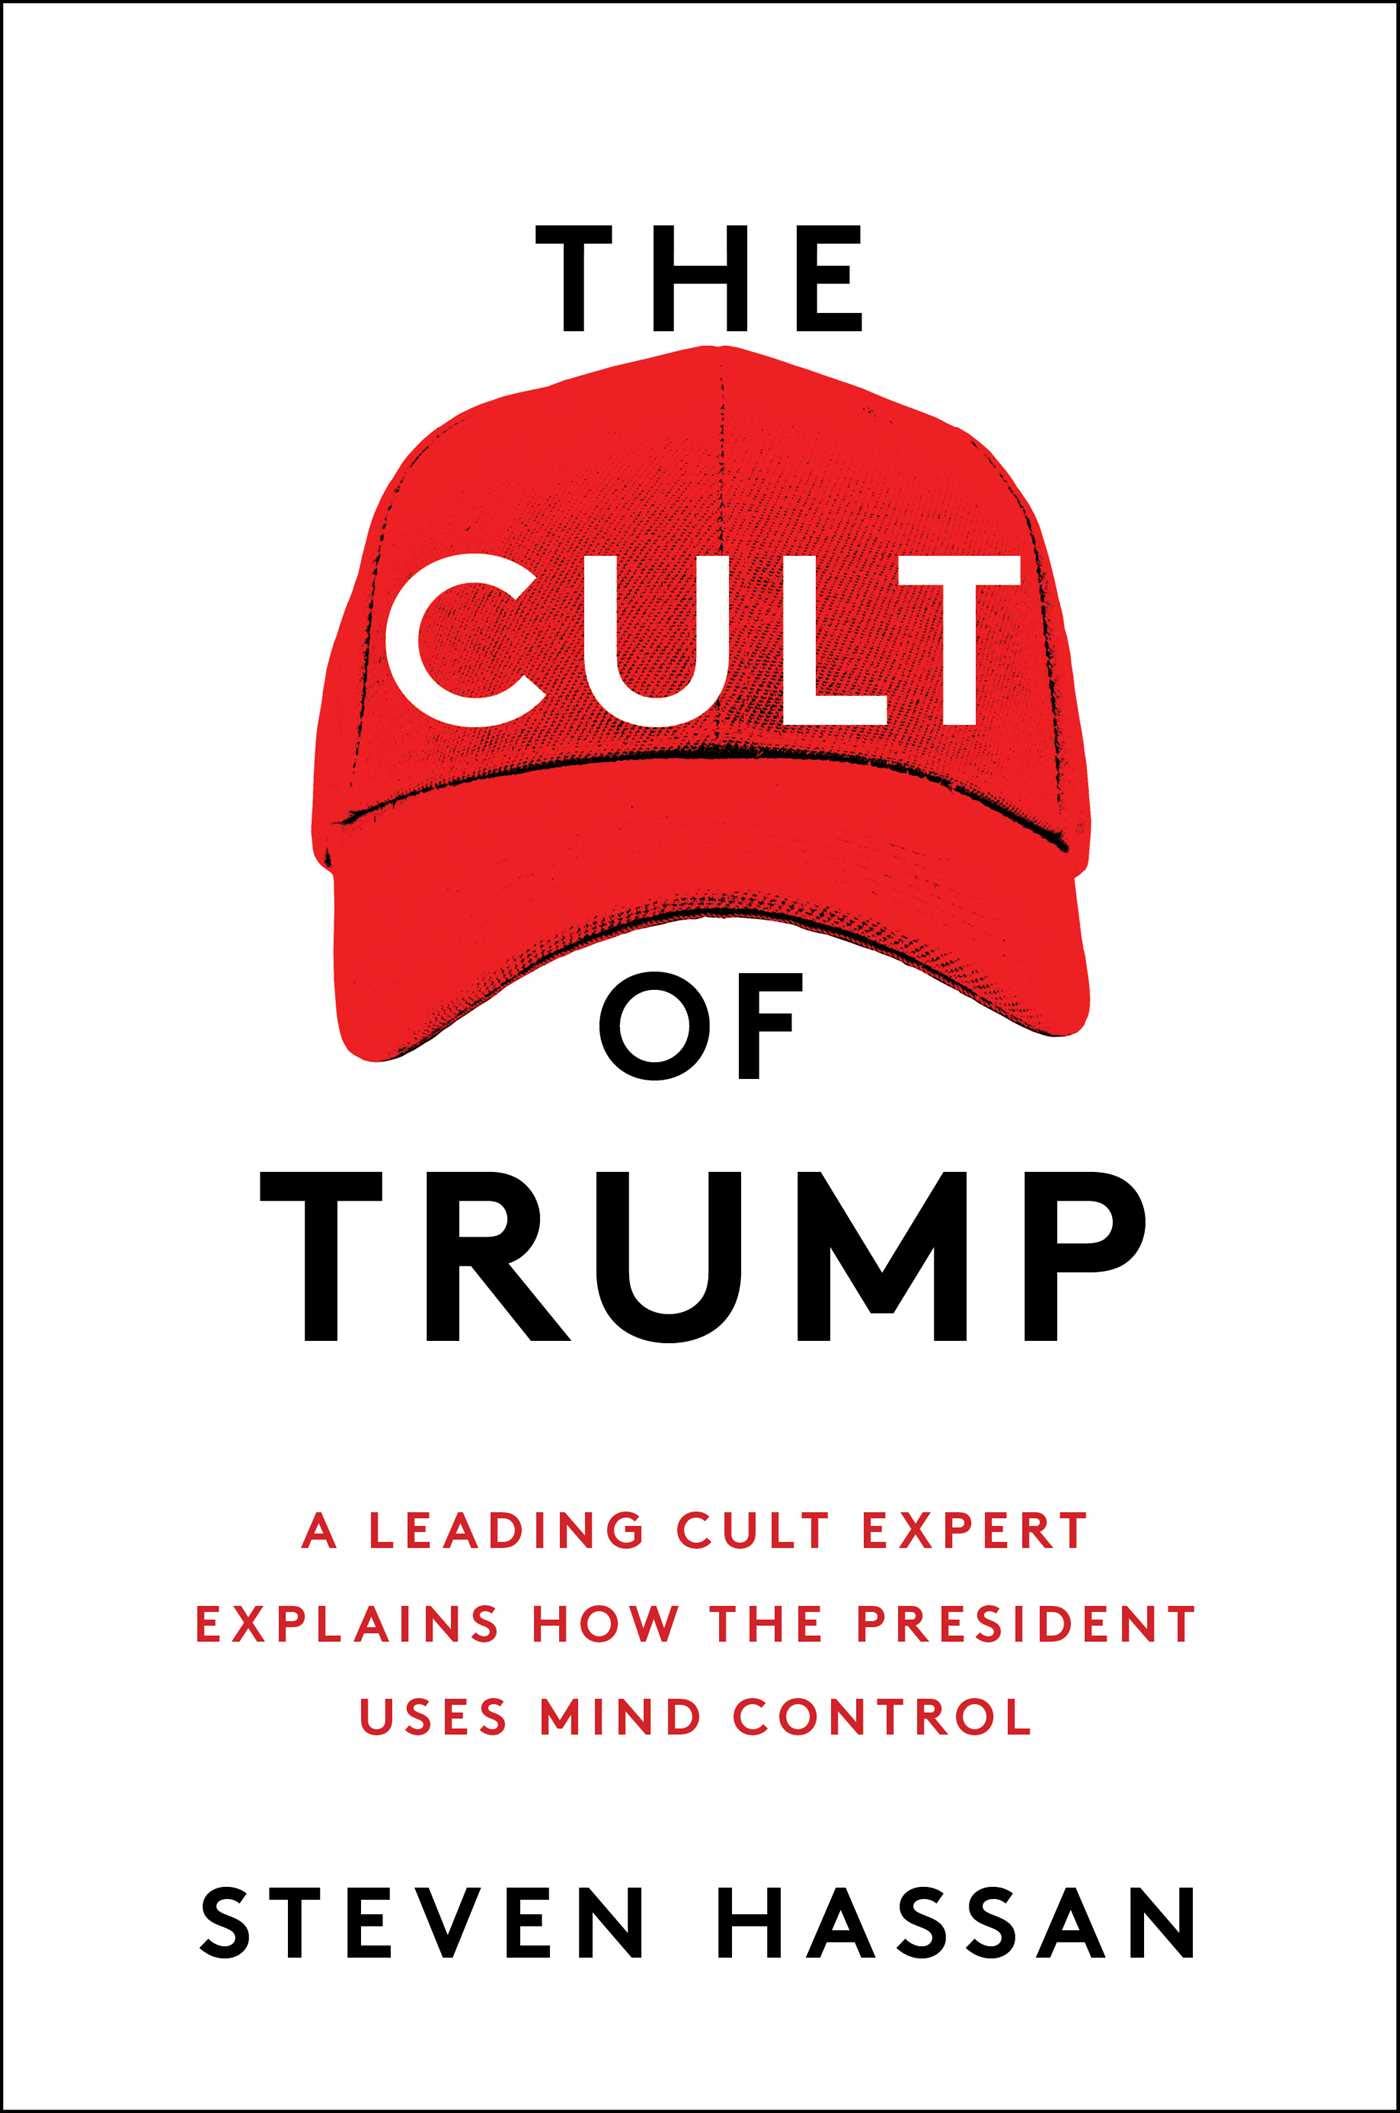 The Cult of Trump - Book Release Date